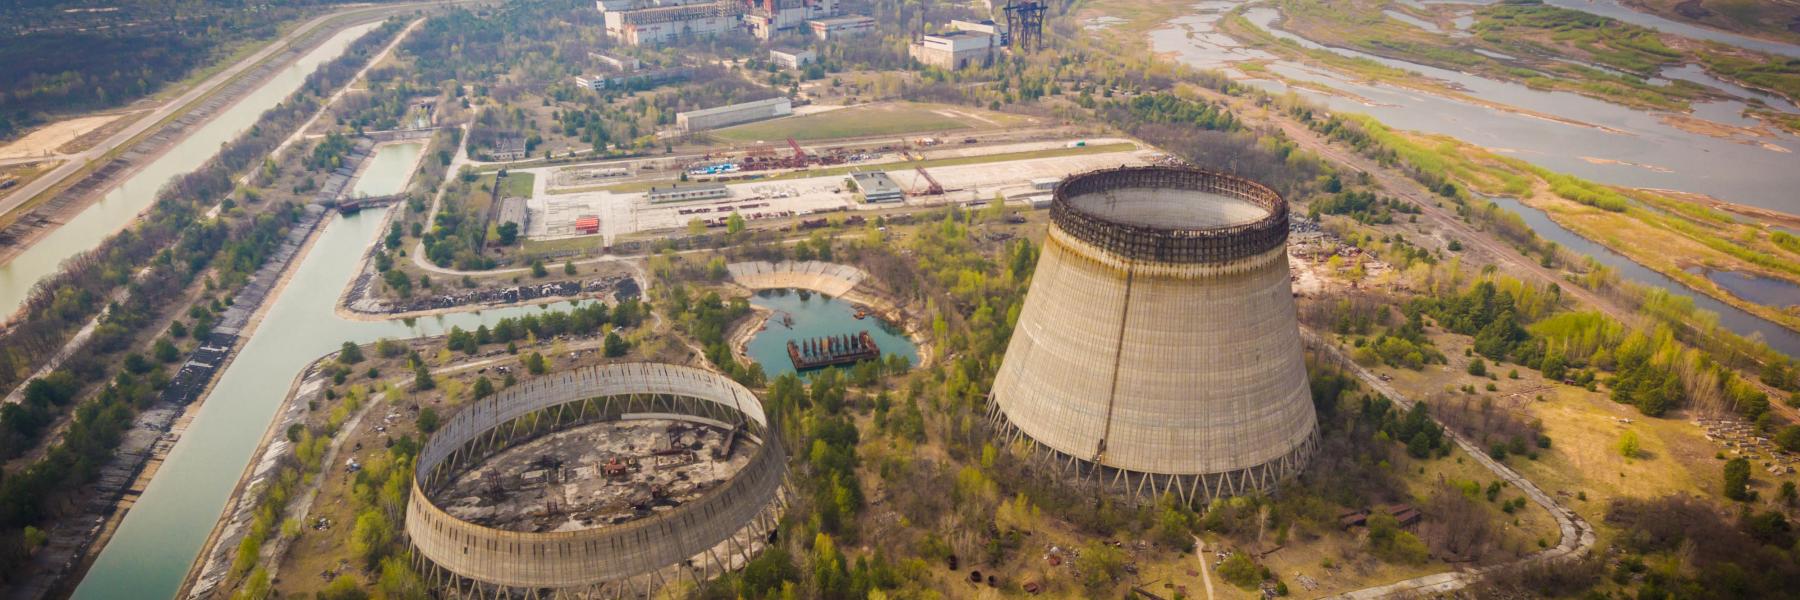 اكتشاف تفاعل نووي خفي في تشيرنوبيل يثير مخاوف من انفجار آخر